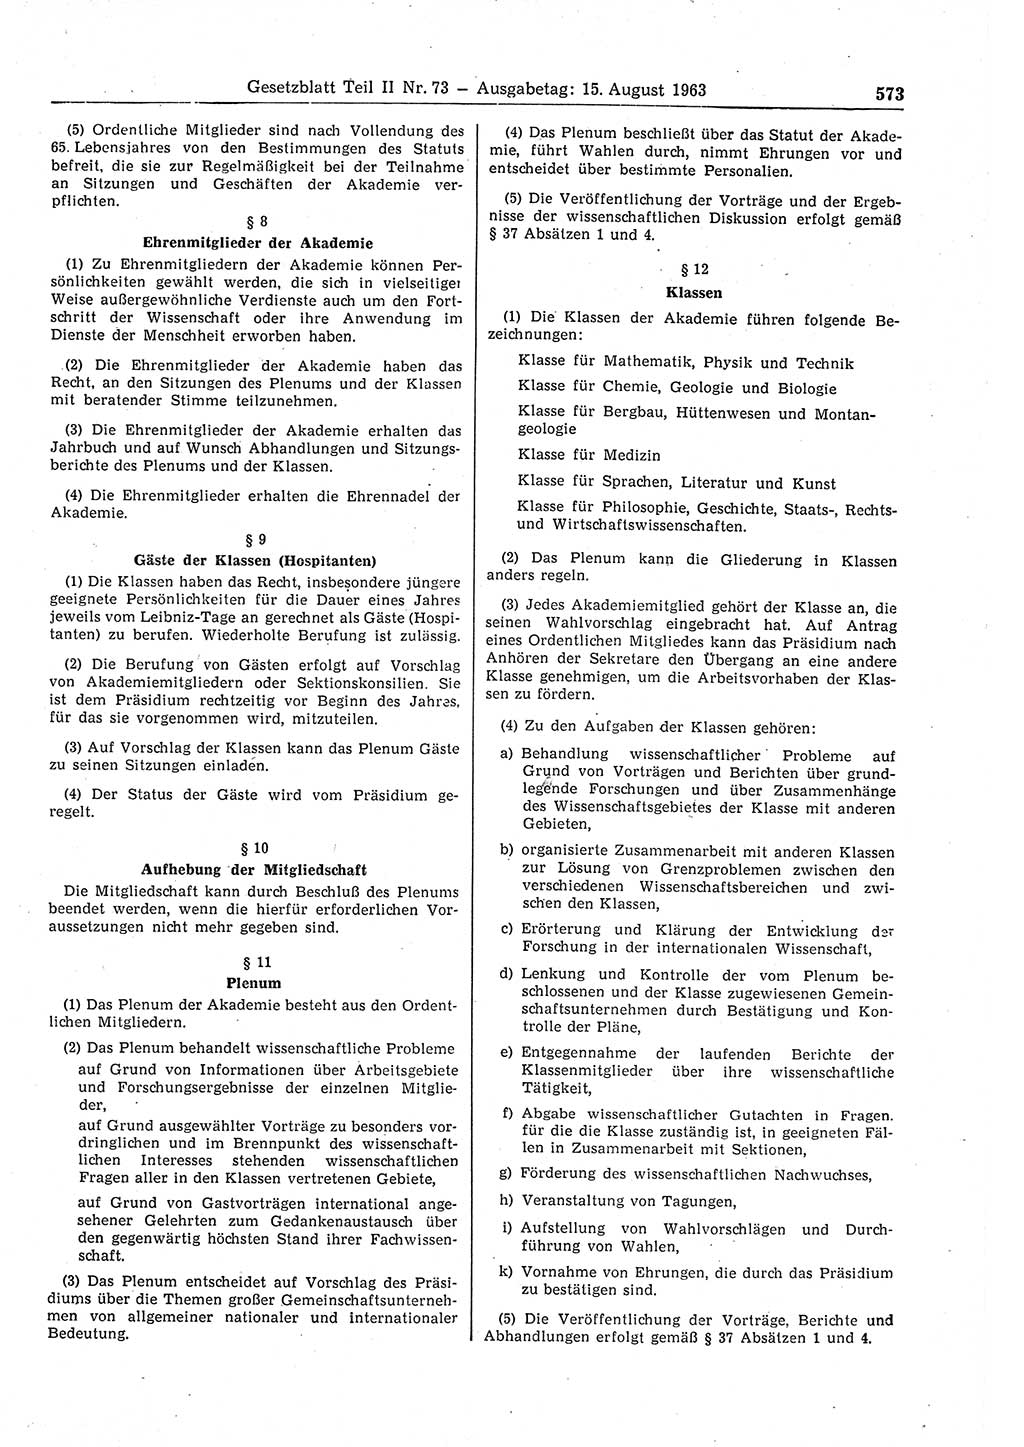 Gesetzblatt (GBl.) der Deutschen Demokratischen Republik (DDR) Teil ⅠⅠ 1963, Seite 573 (GBl. DDR ⅠⅠ 1963, S. 573)